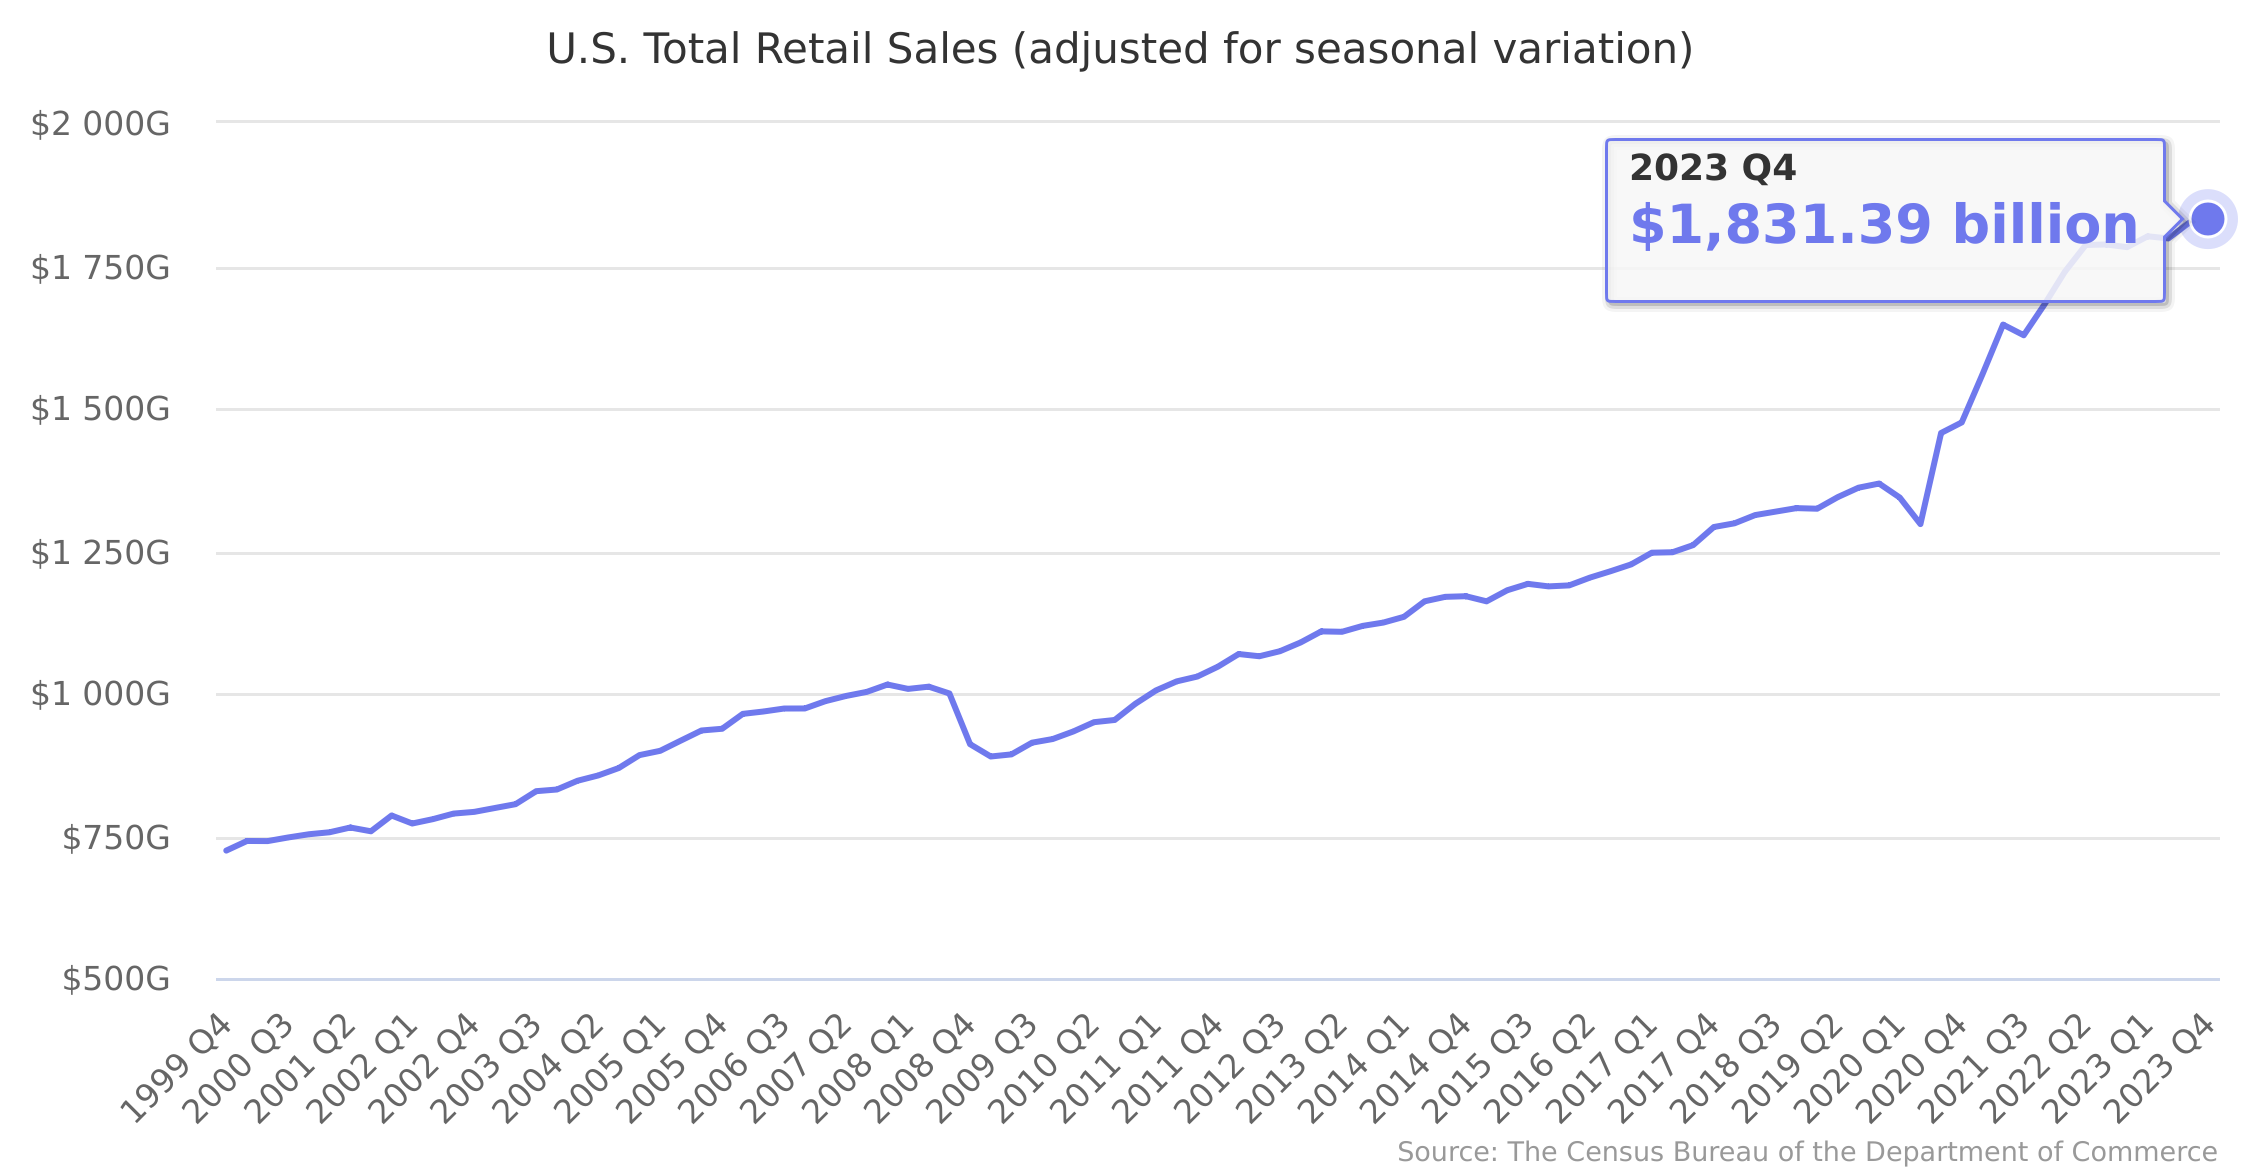 U.S. Total Retail Sales 1999-2023